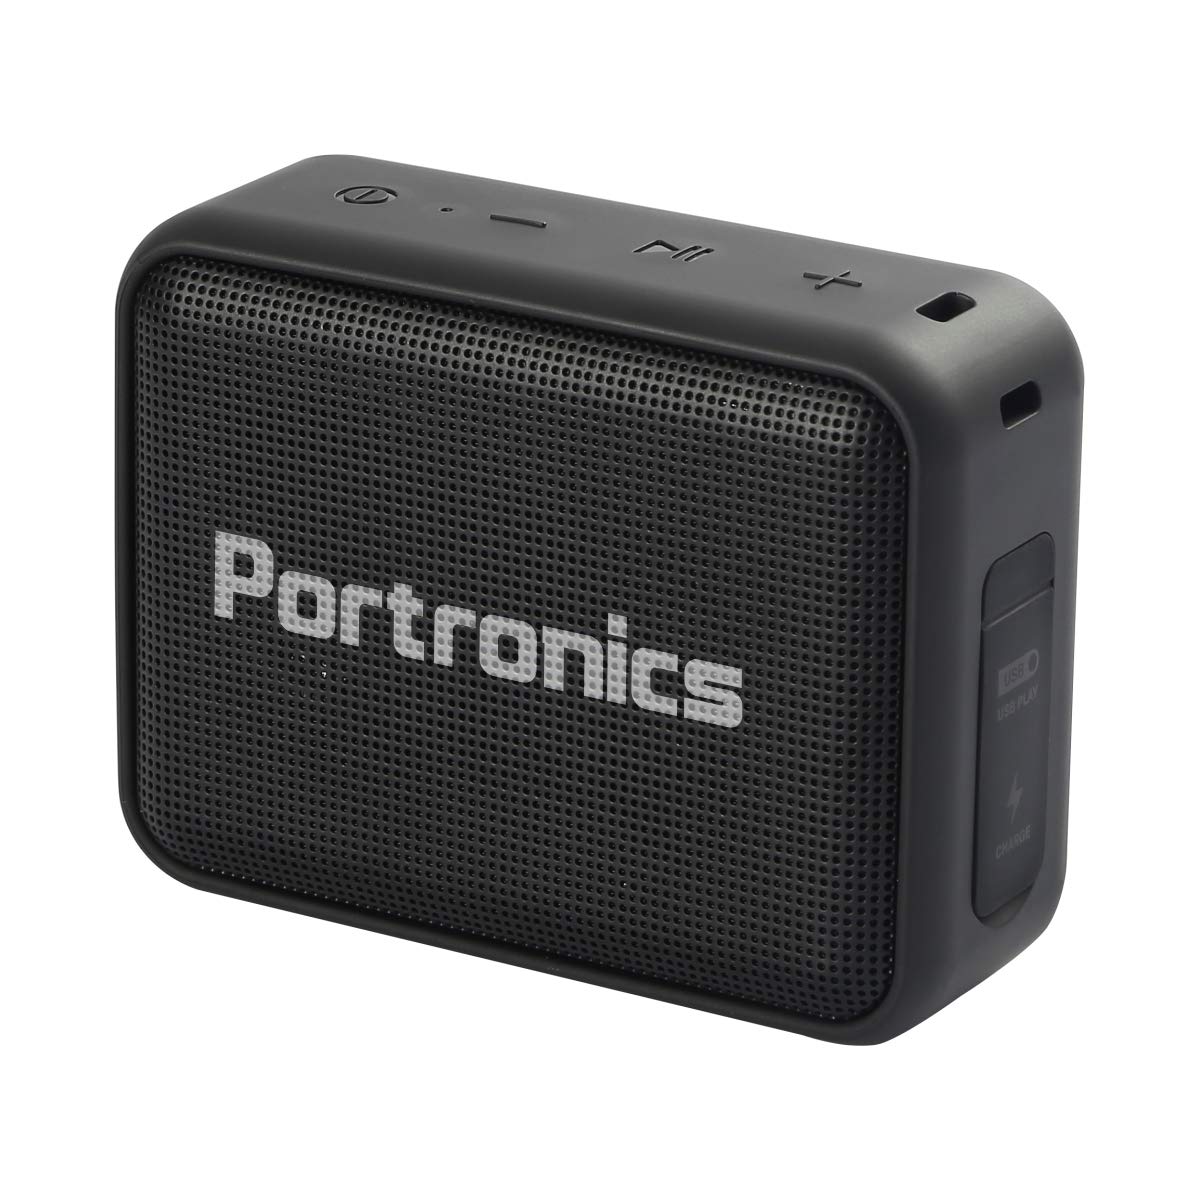 portronics speaker price